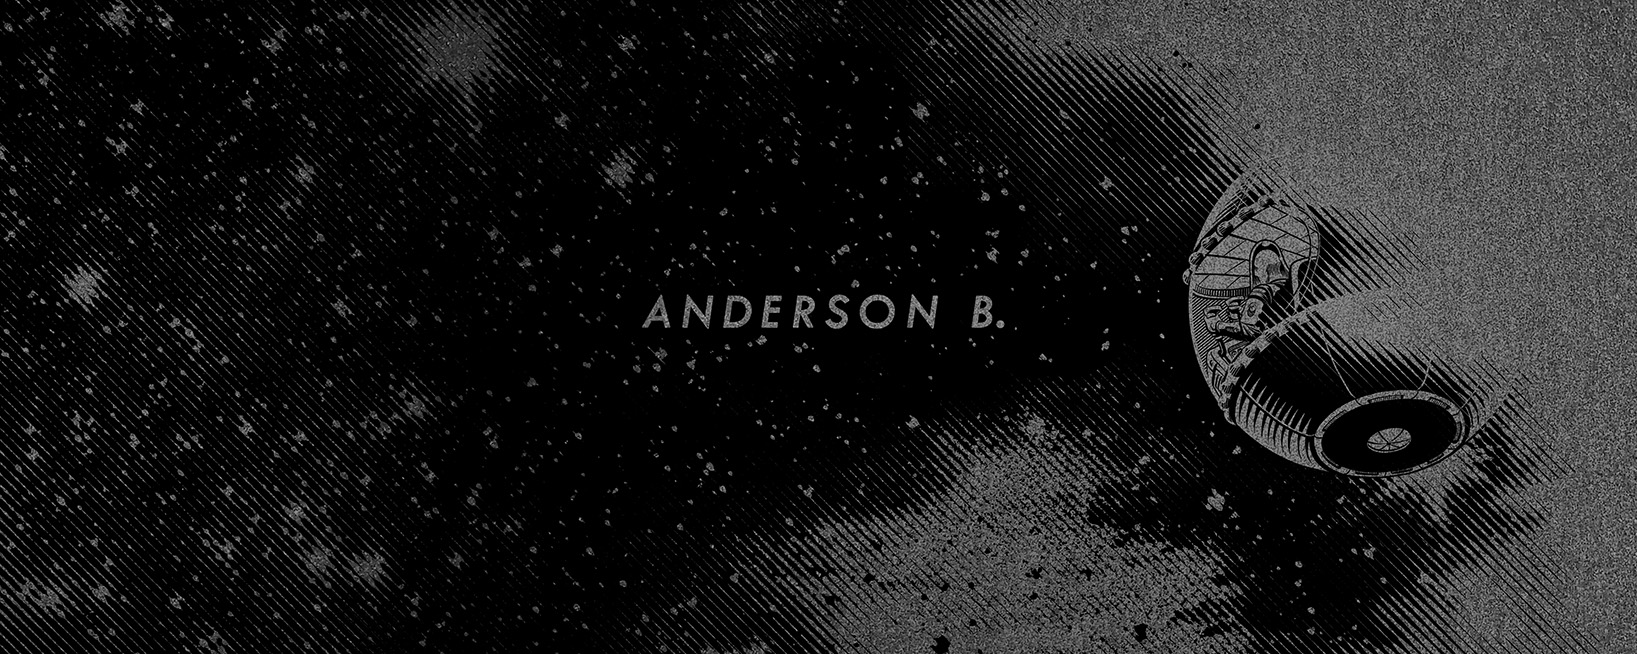 Anderson B.